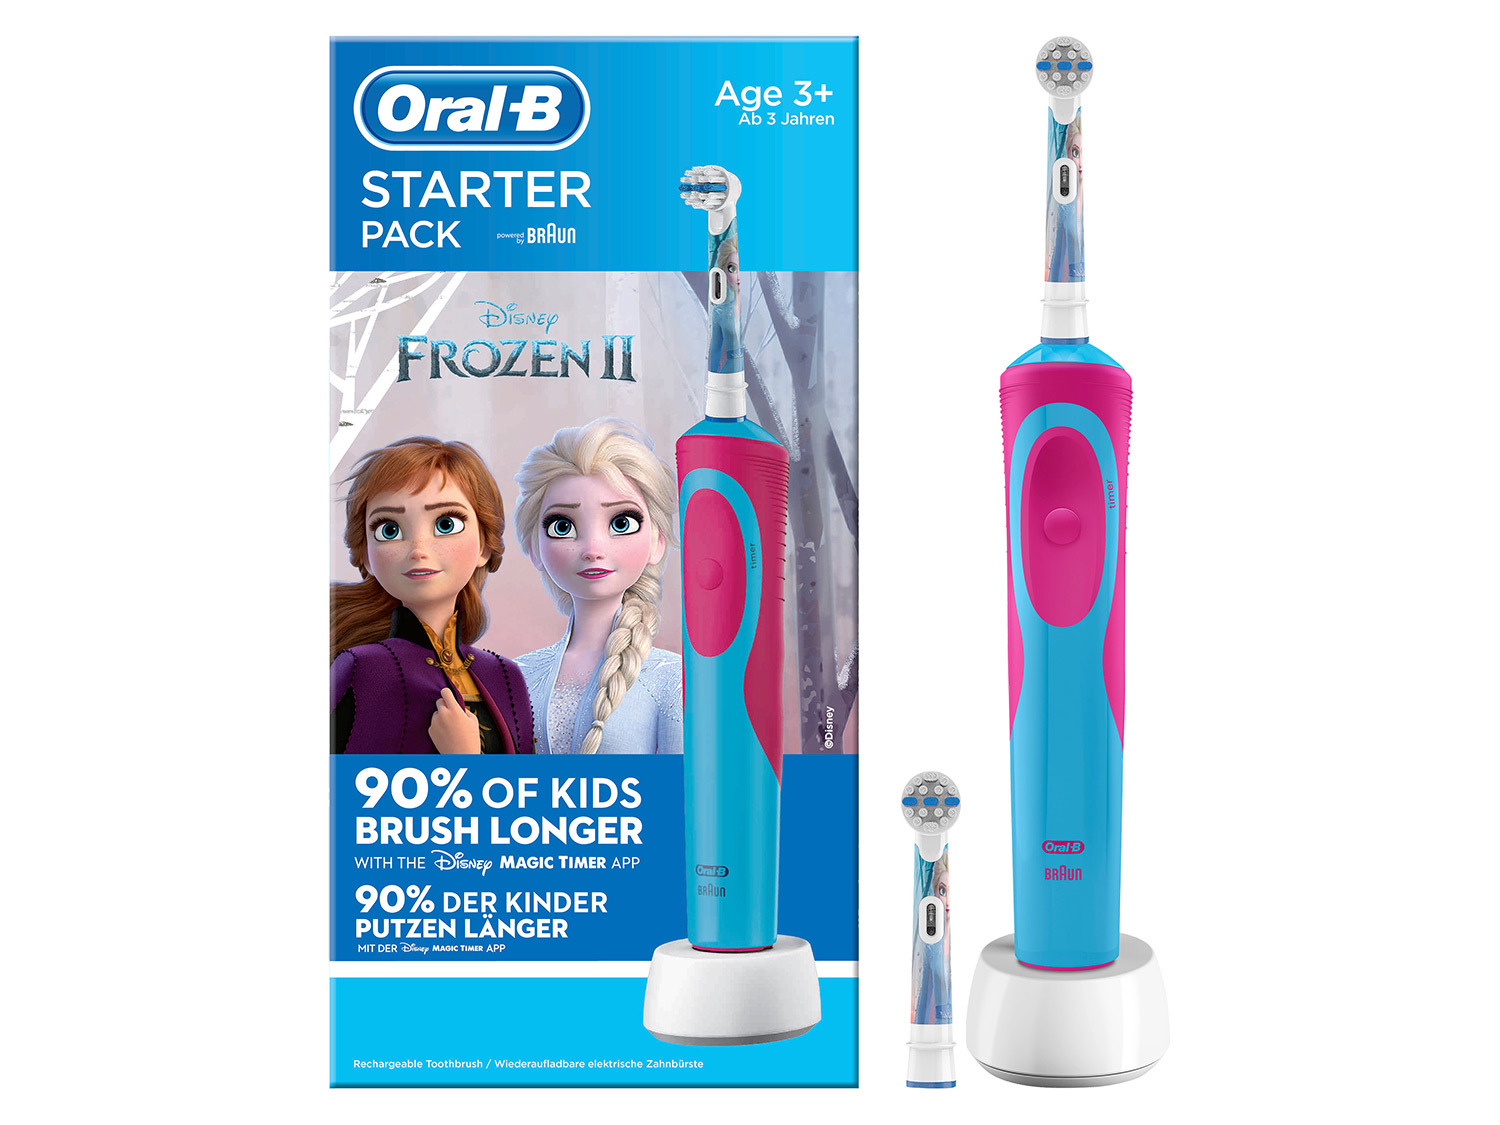 Metropolitan Verbetering Zin Oral-B Elektrische tandenborstel Frozen | Lidl.be